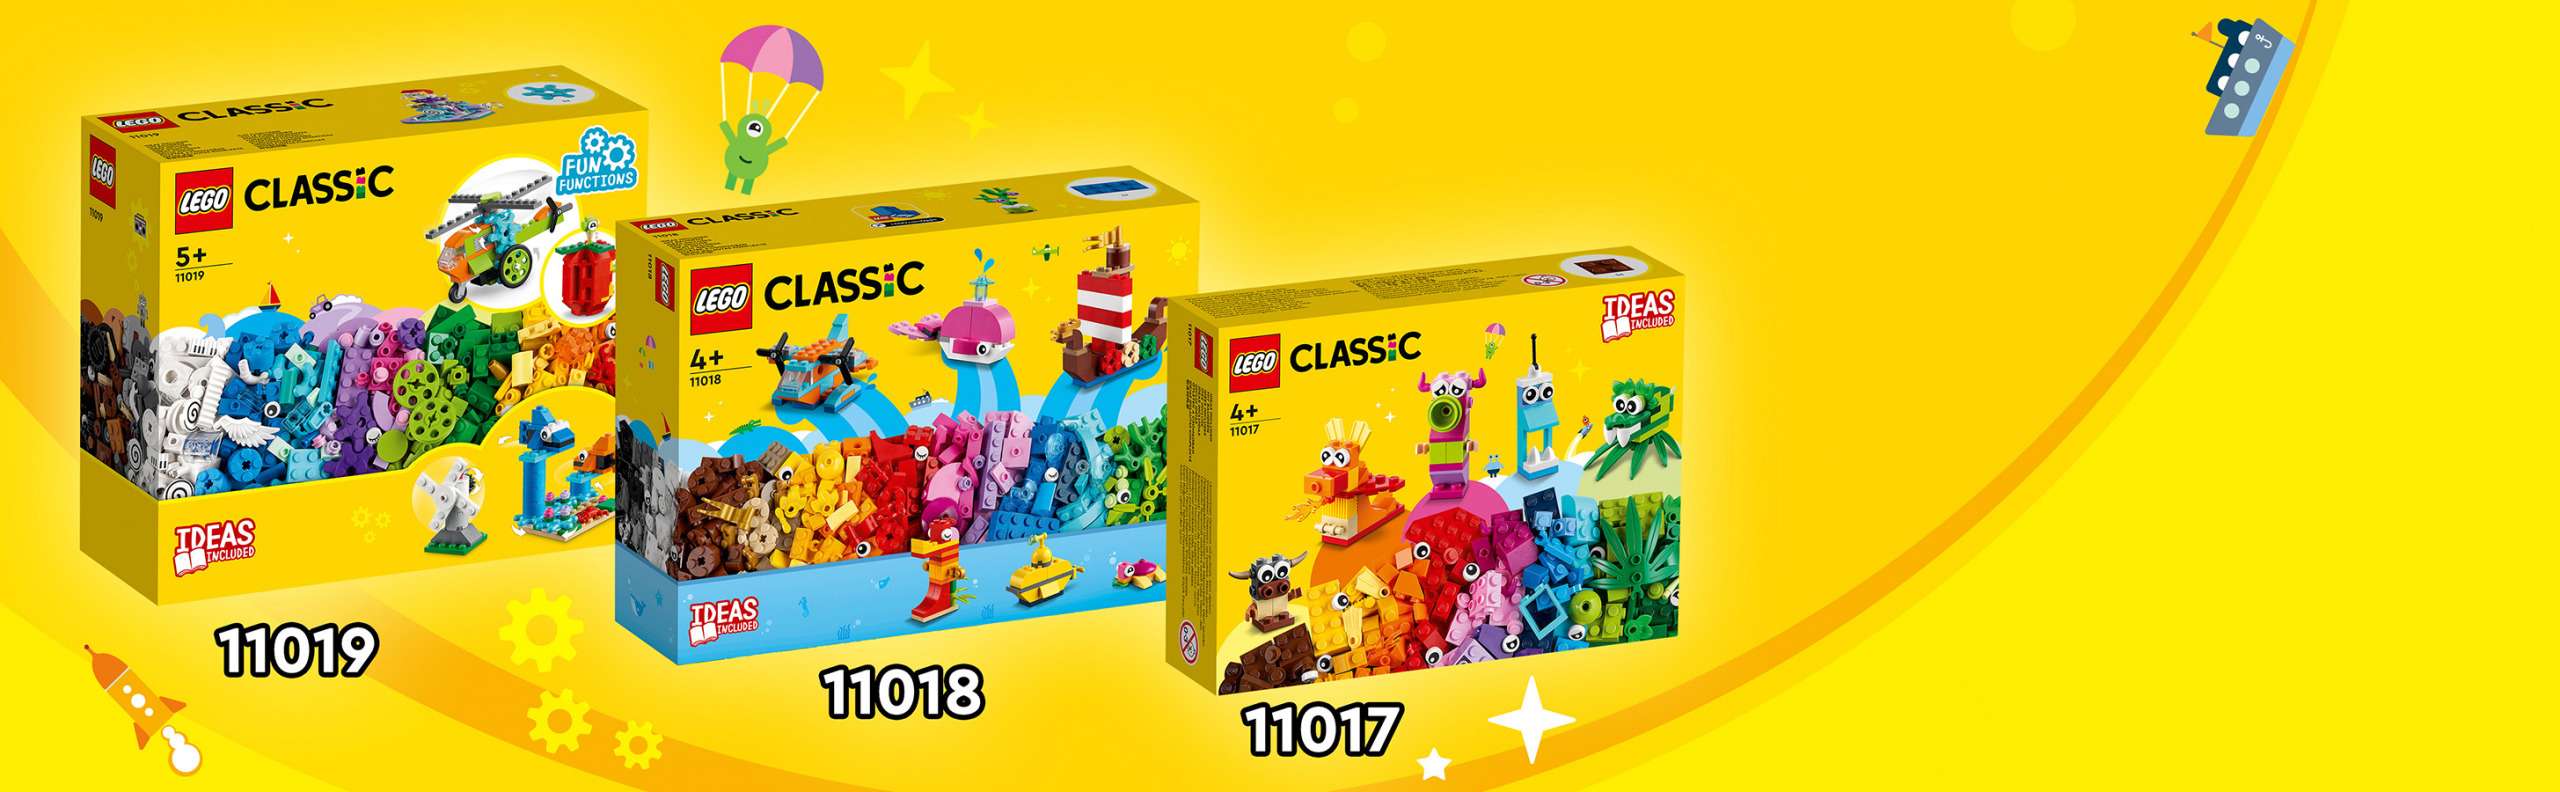 LEGO CLASSIC - Peças e Funções - 11019